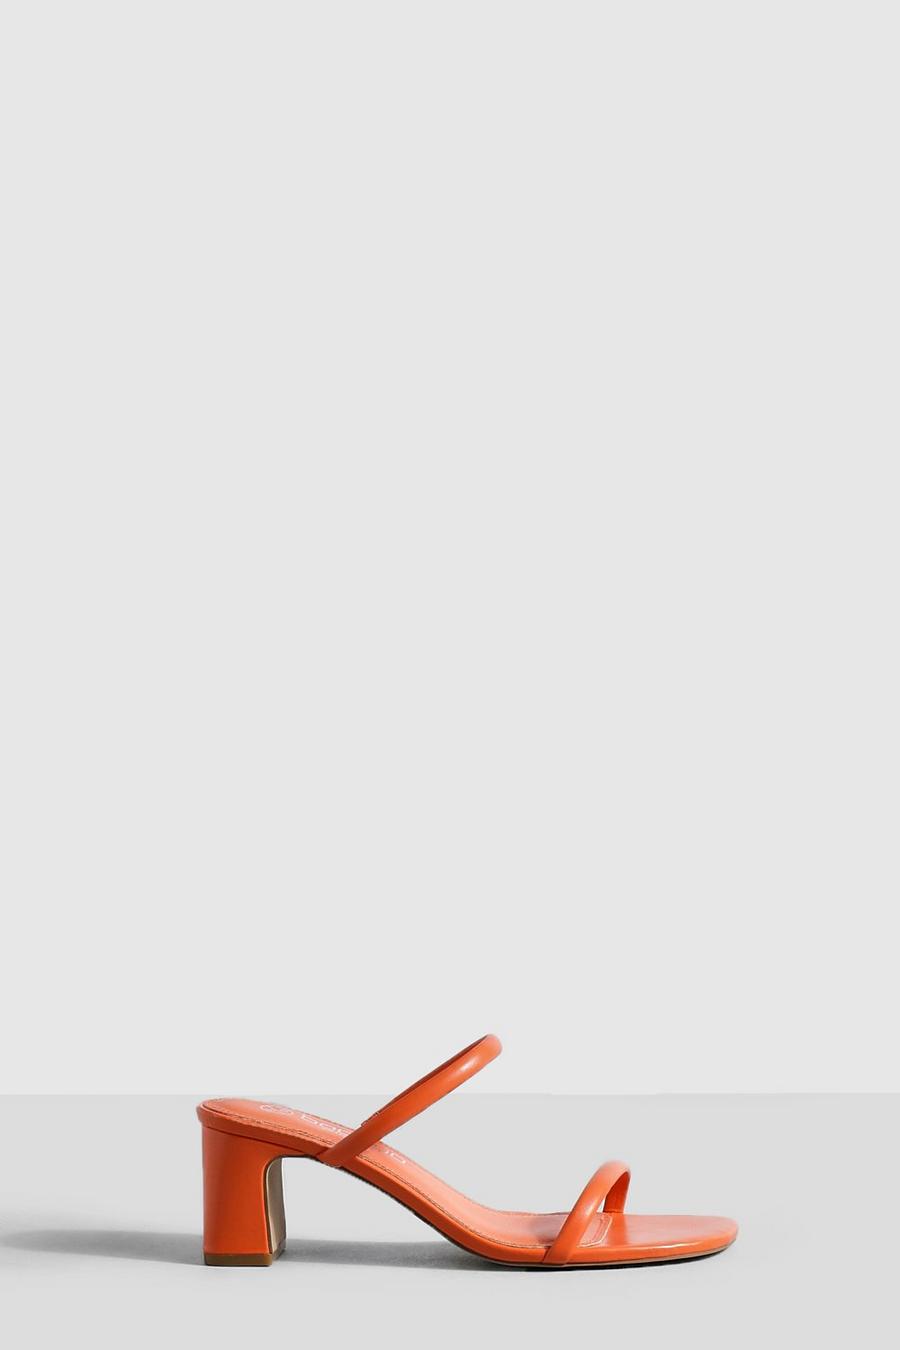 Mules a calzata ampia con doppia fascetta, Orange arancio